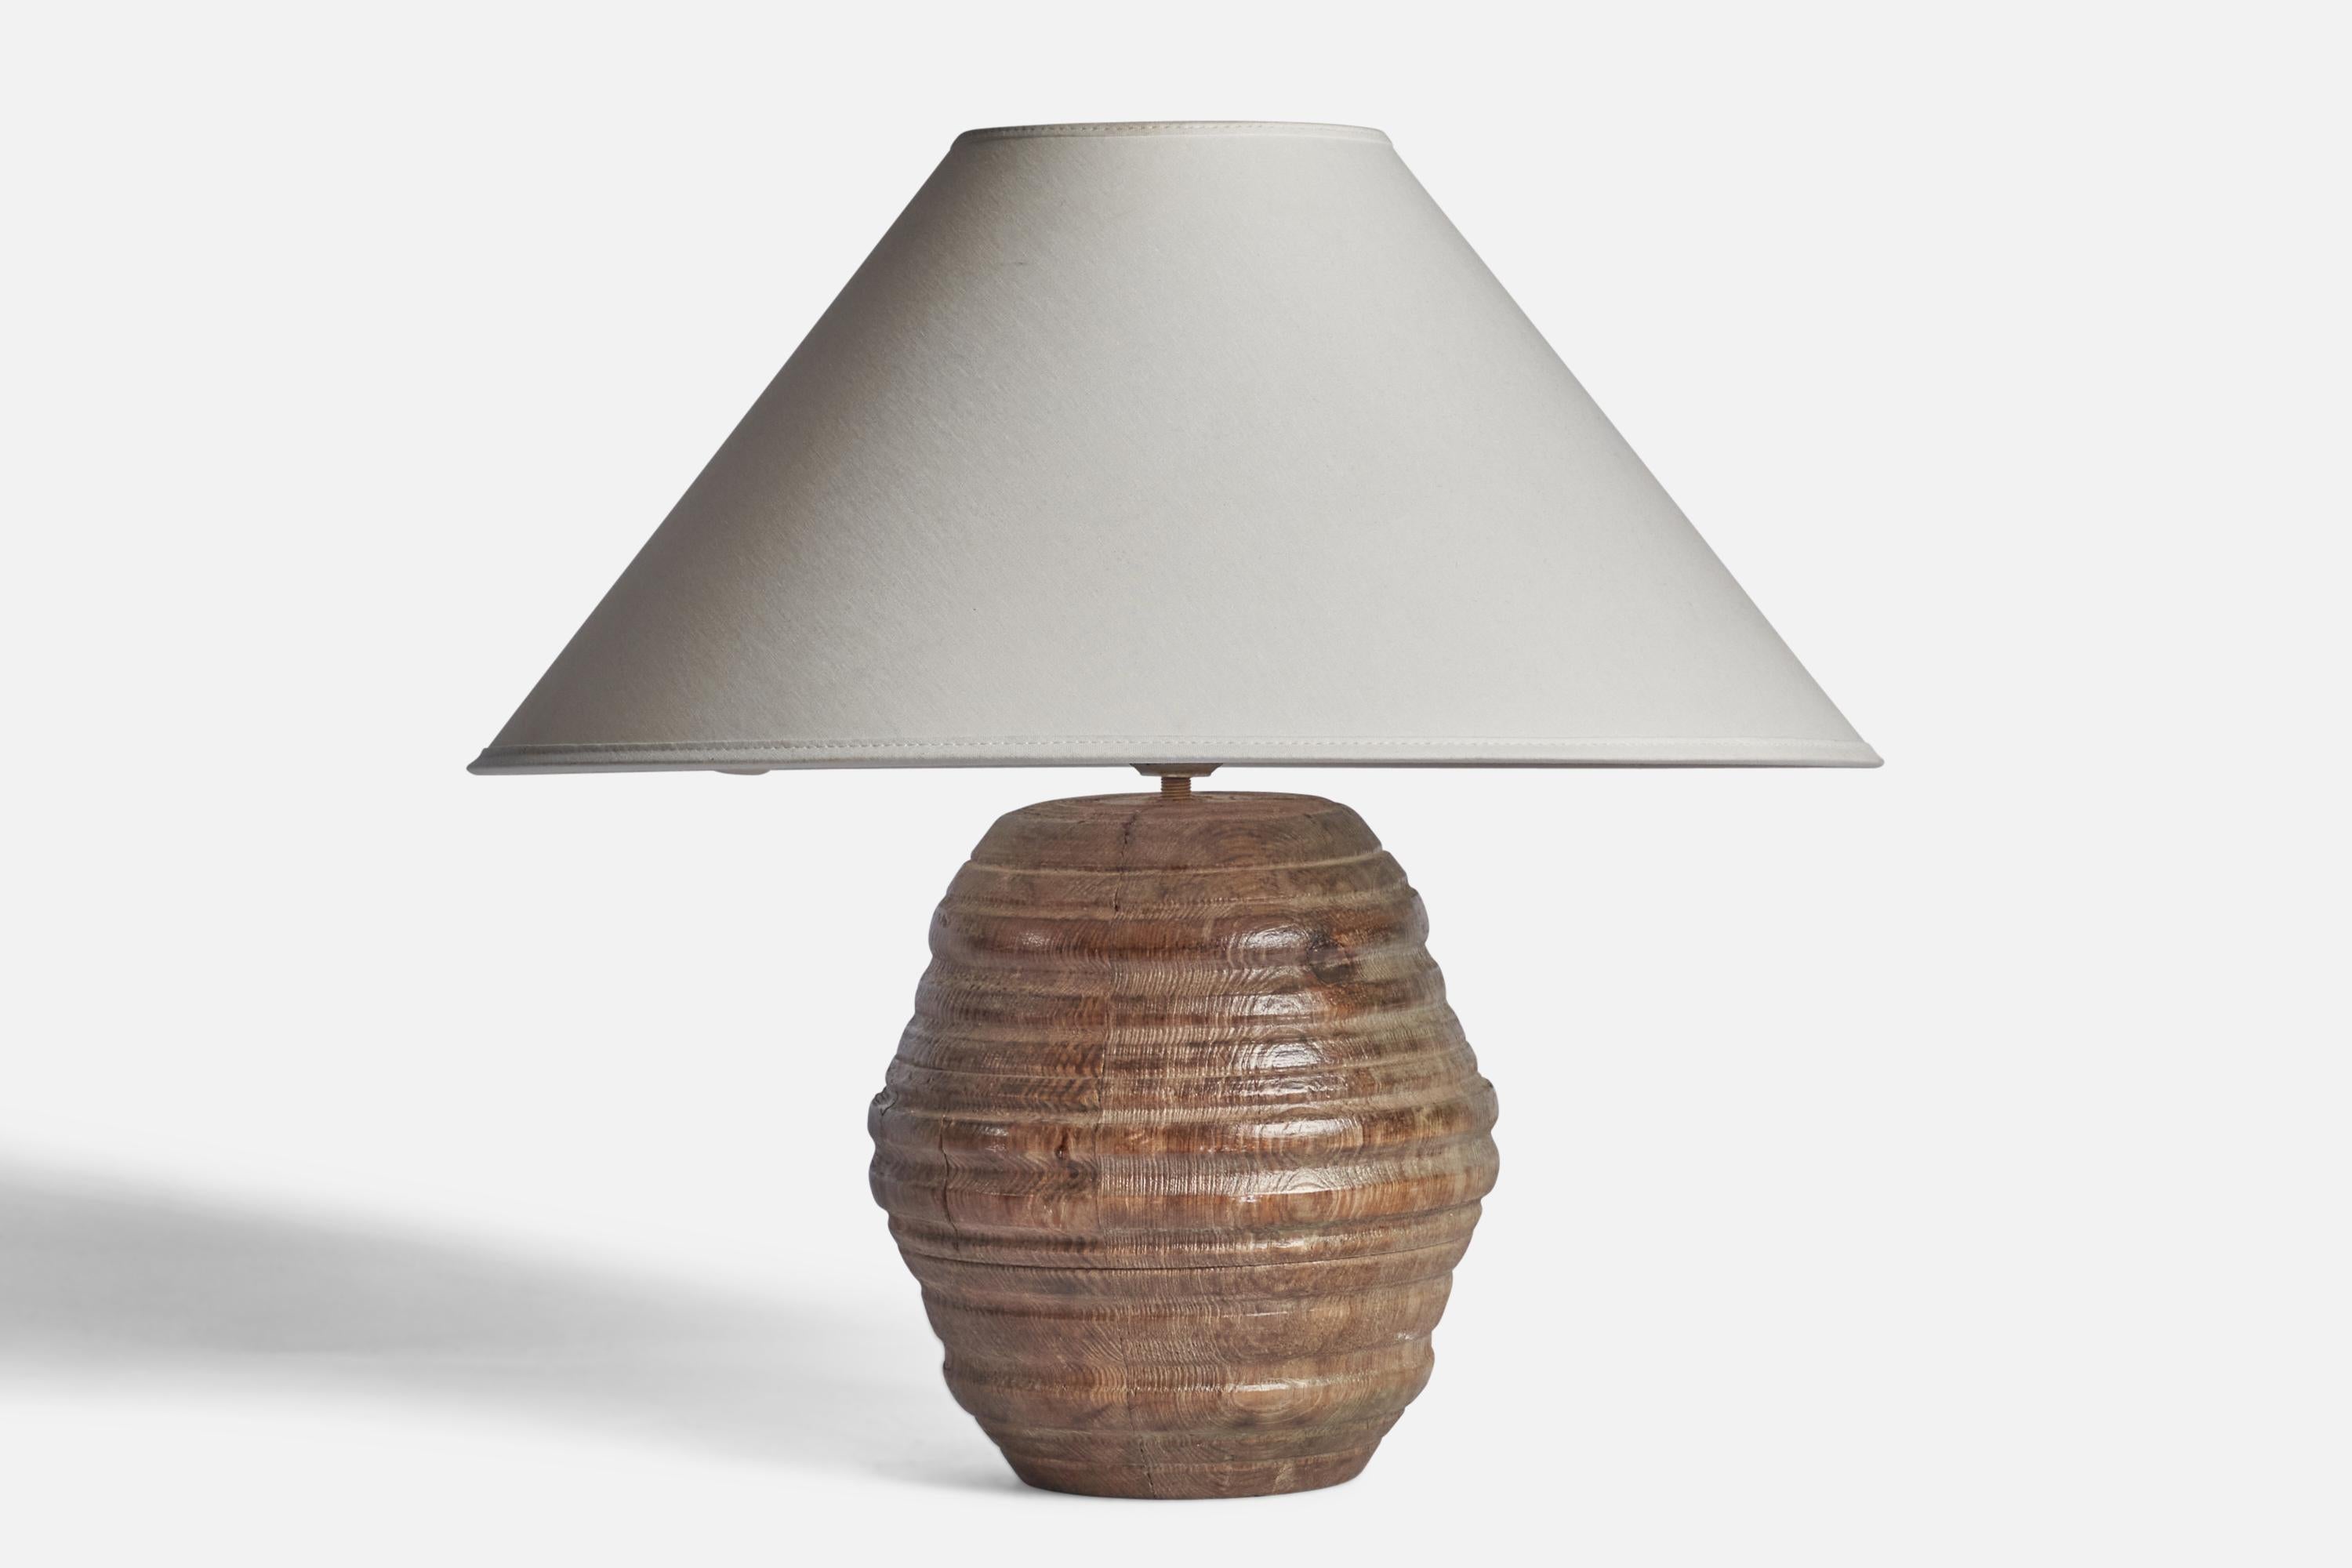 Lampe en bois massif conçue et produite en Suède, c. 1950.

Dimensions de la lampe (pouces) : 10